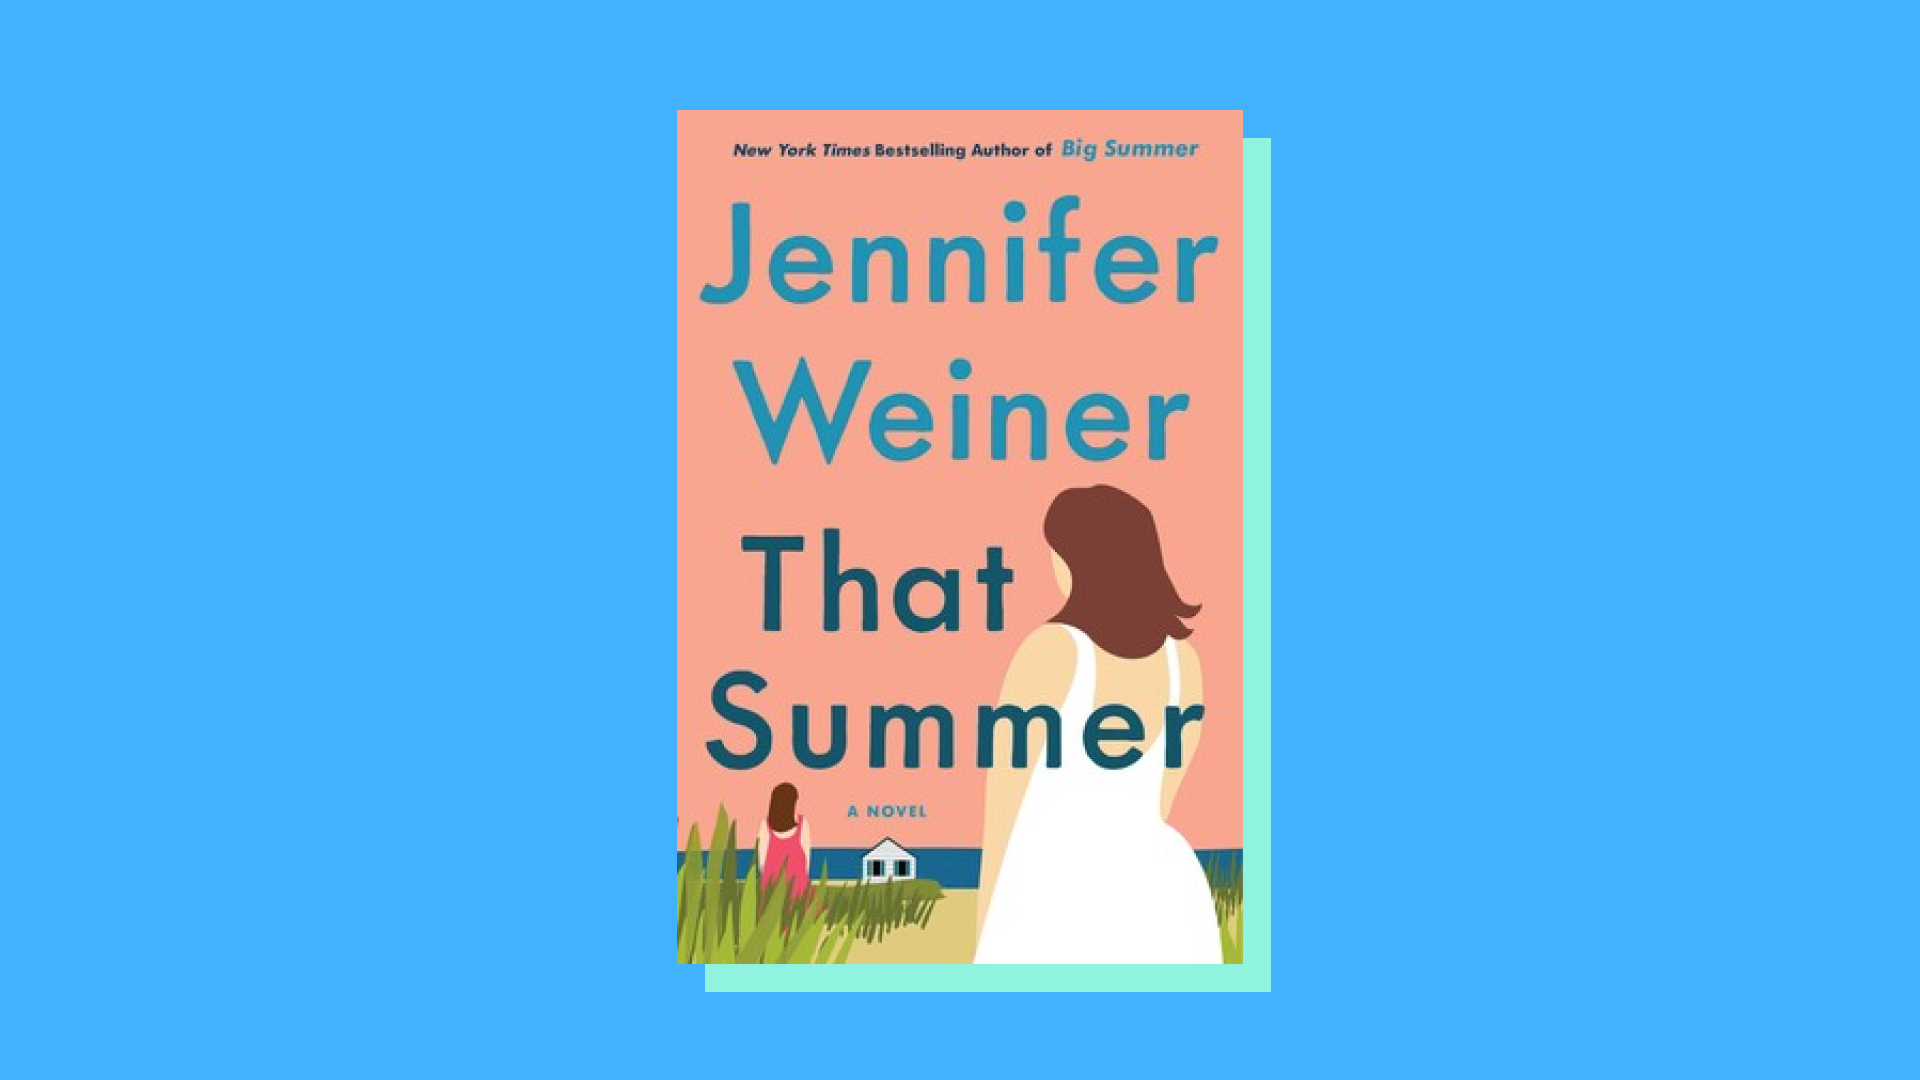 “That Summer” by Jennifer Weiner